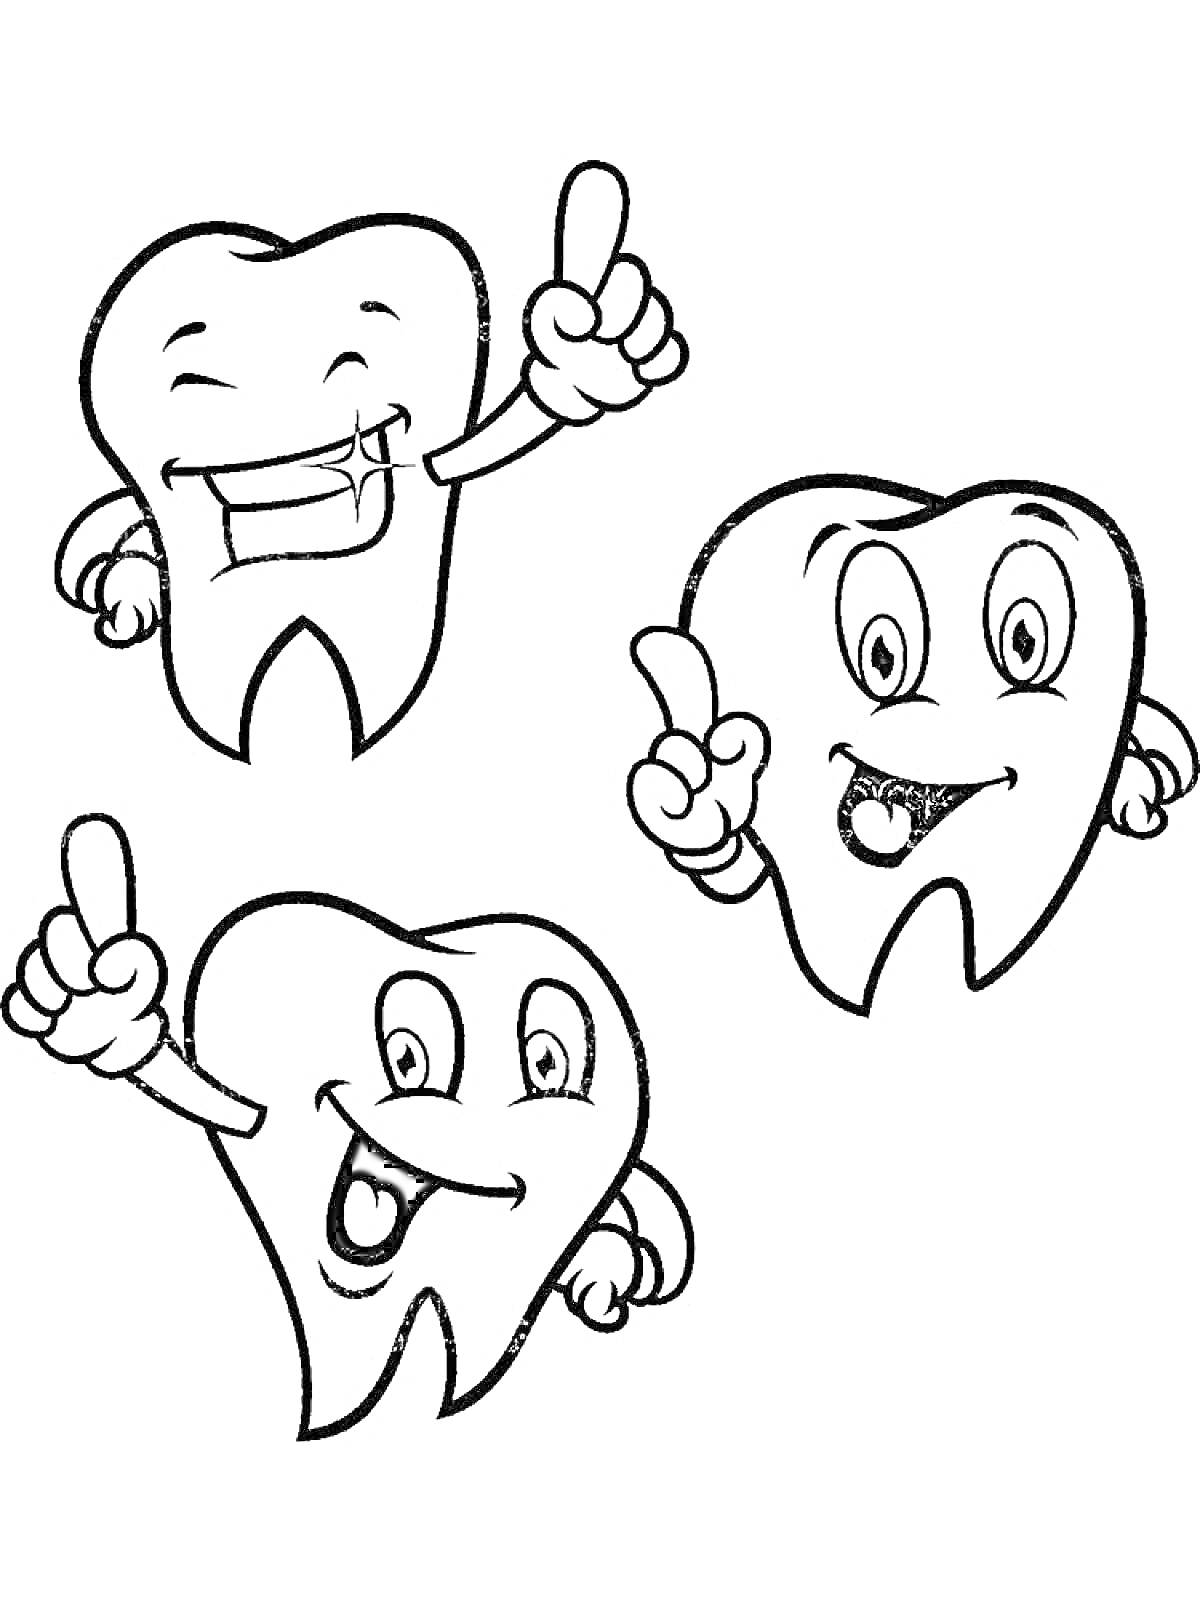 Раскраска Три зуба с выражением лиц, показывают жест 